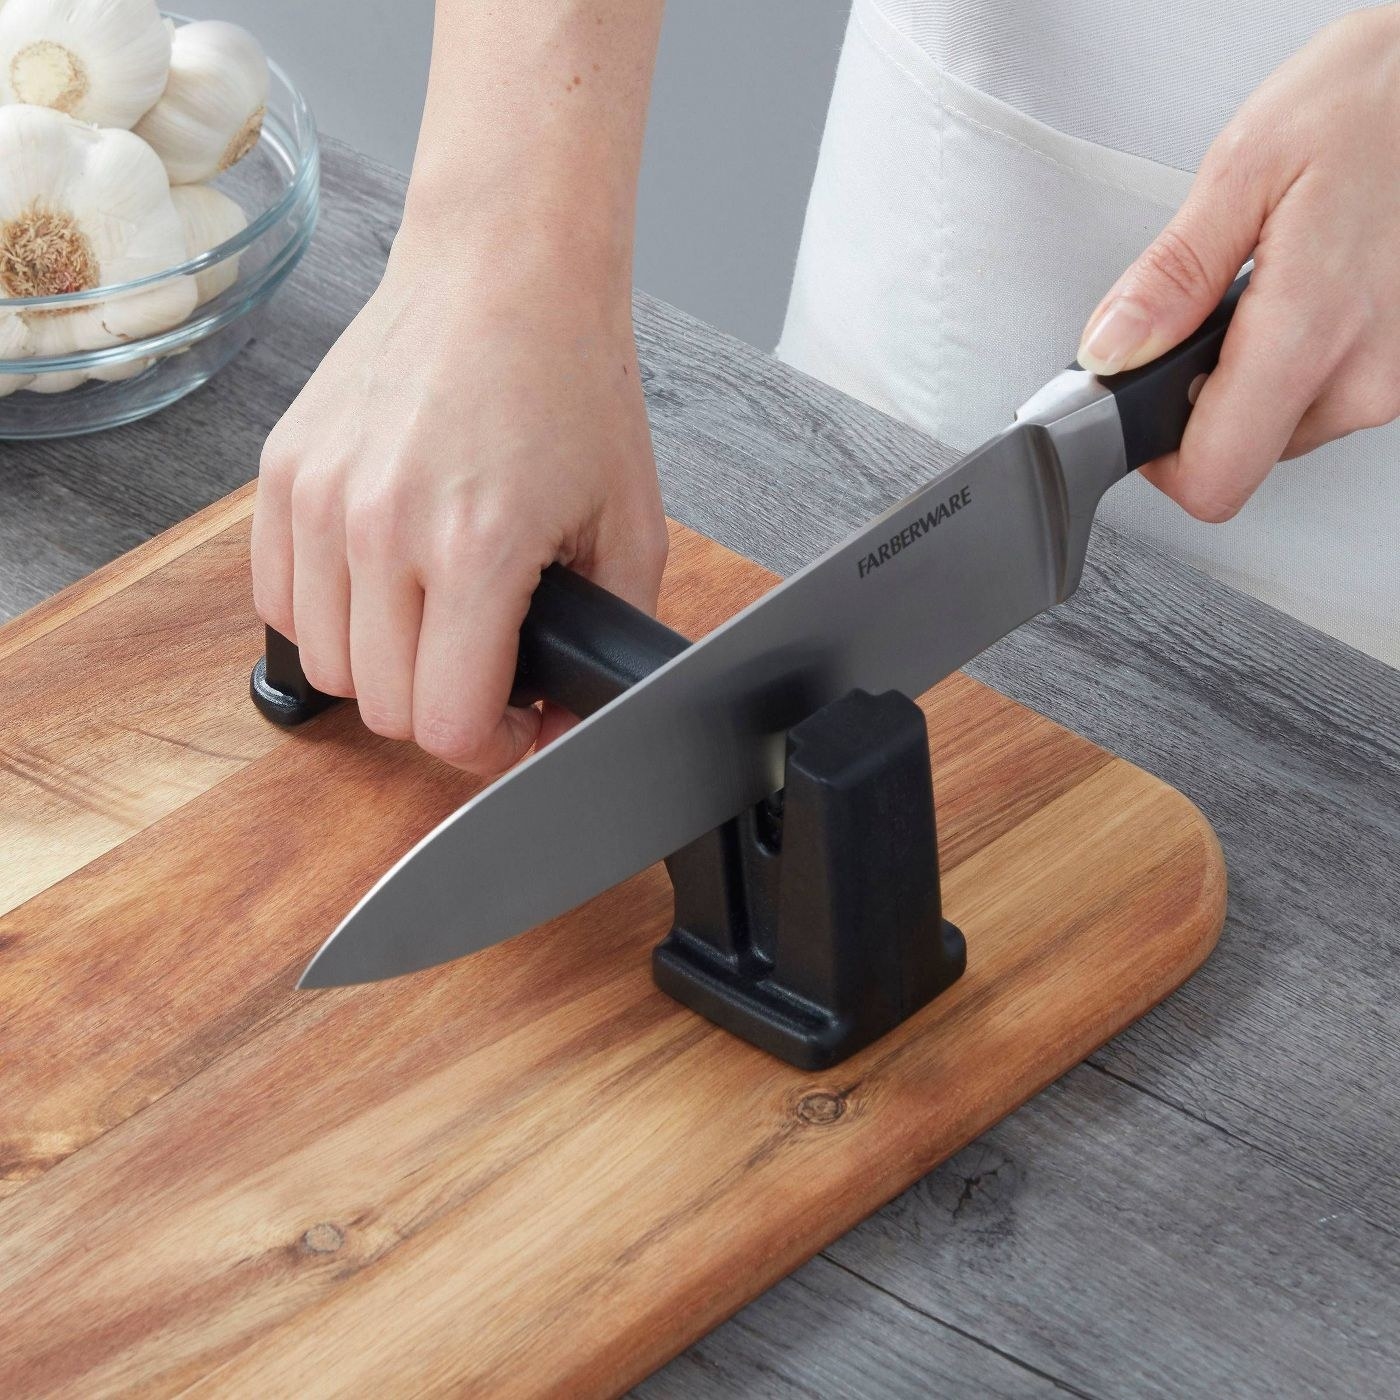 Model using the tabletop handheld knife sharpener